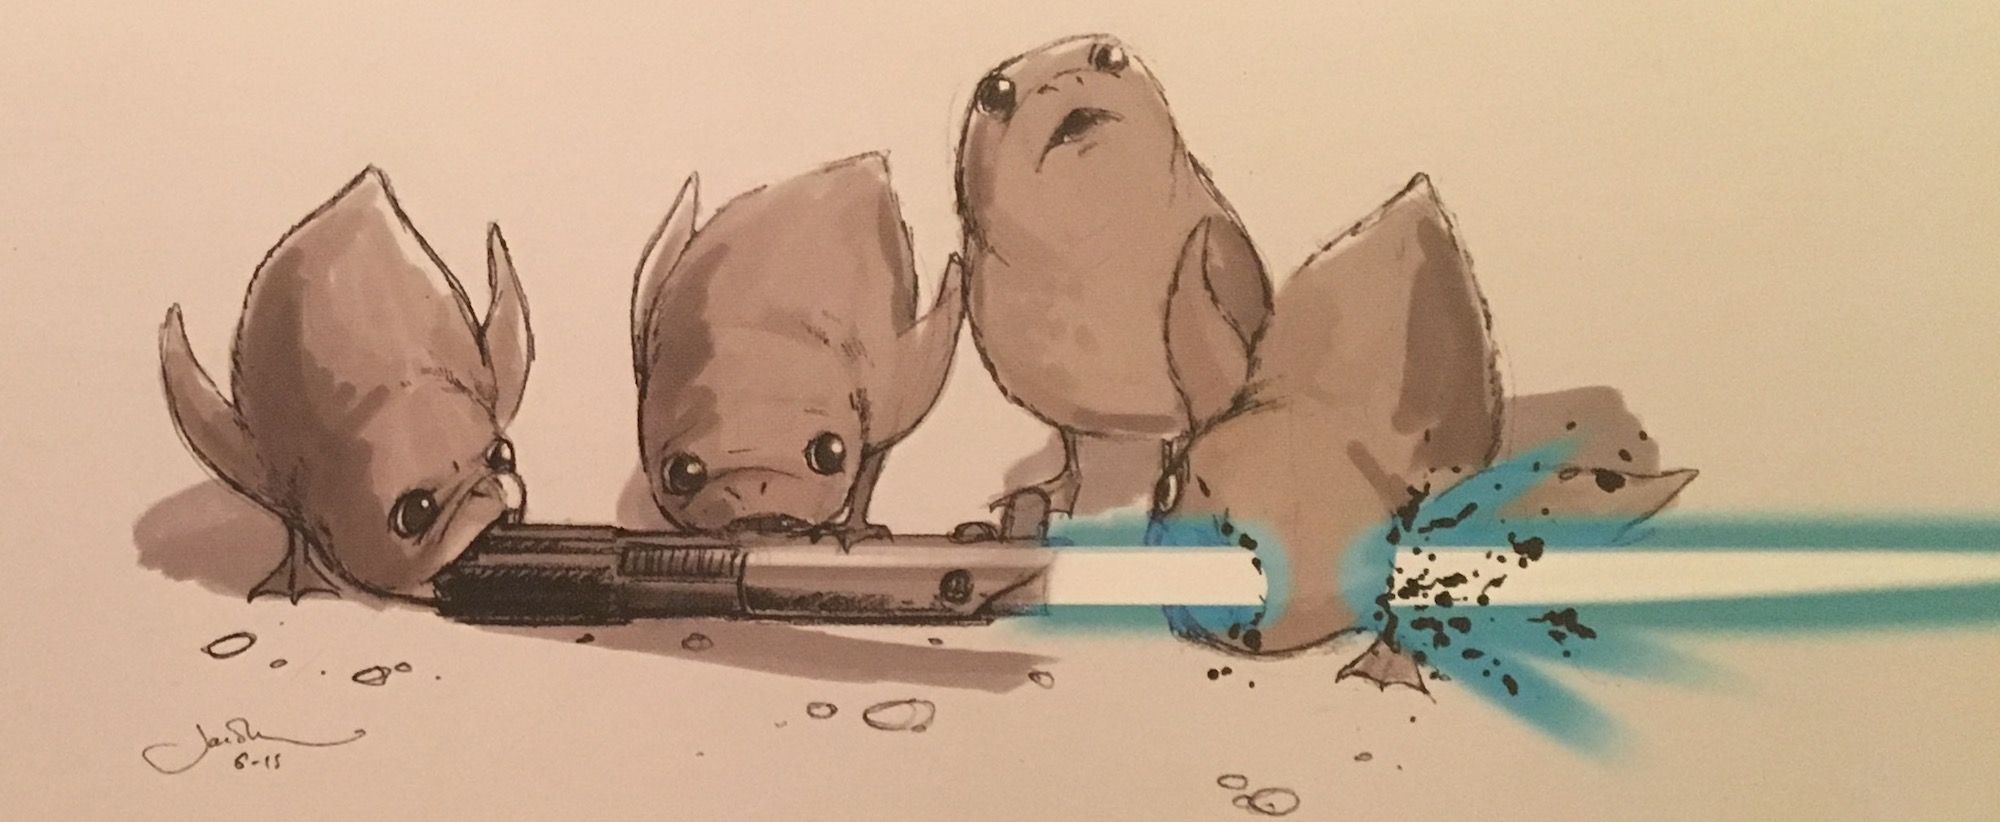 Porgs vs a lightsaber in Star Wars The Last Jedi concept art